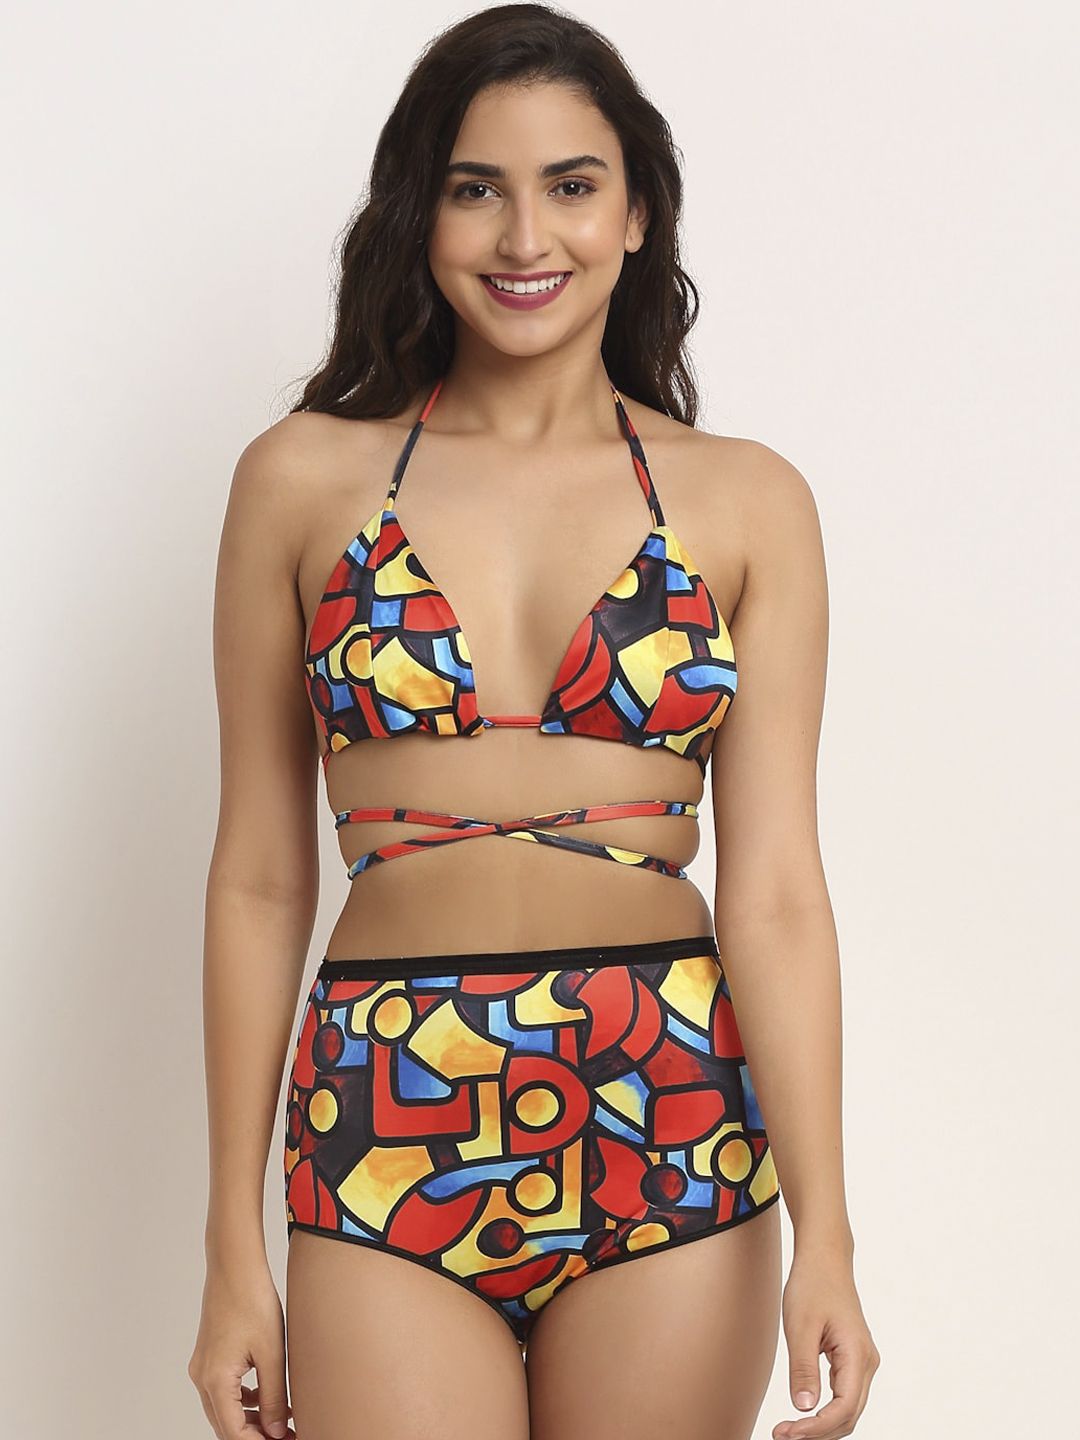 EROTISSCH Women Red & Yellow Printed Swim Bikini Set Price in India